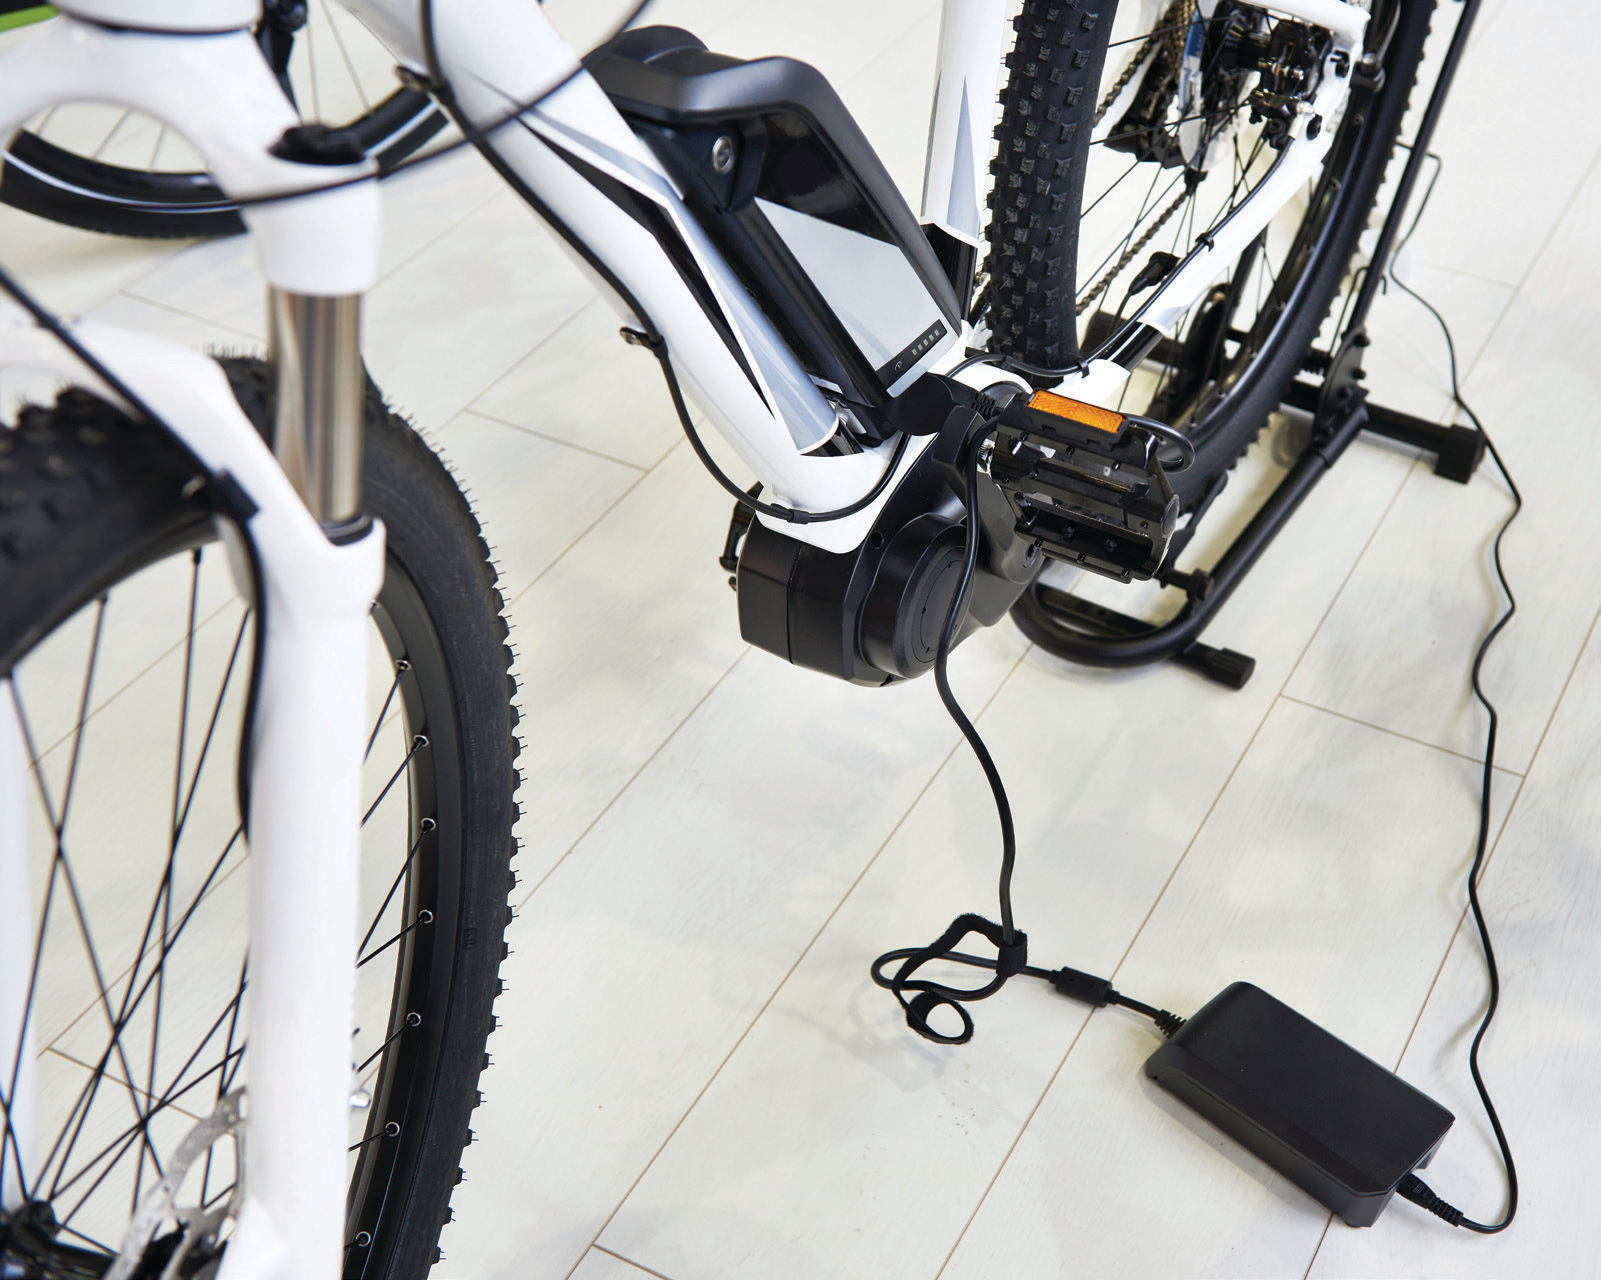 E-bike charging